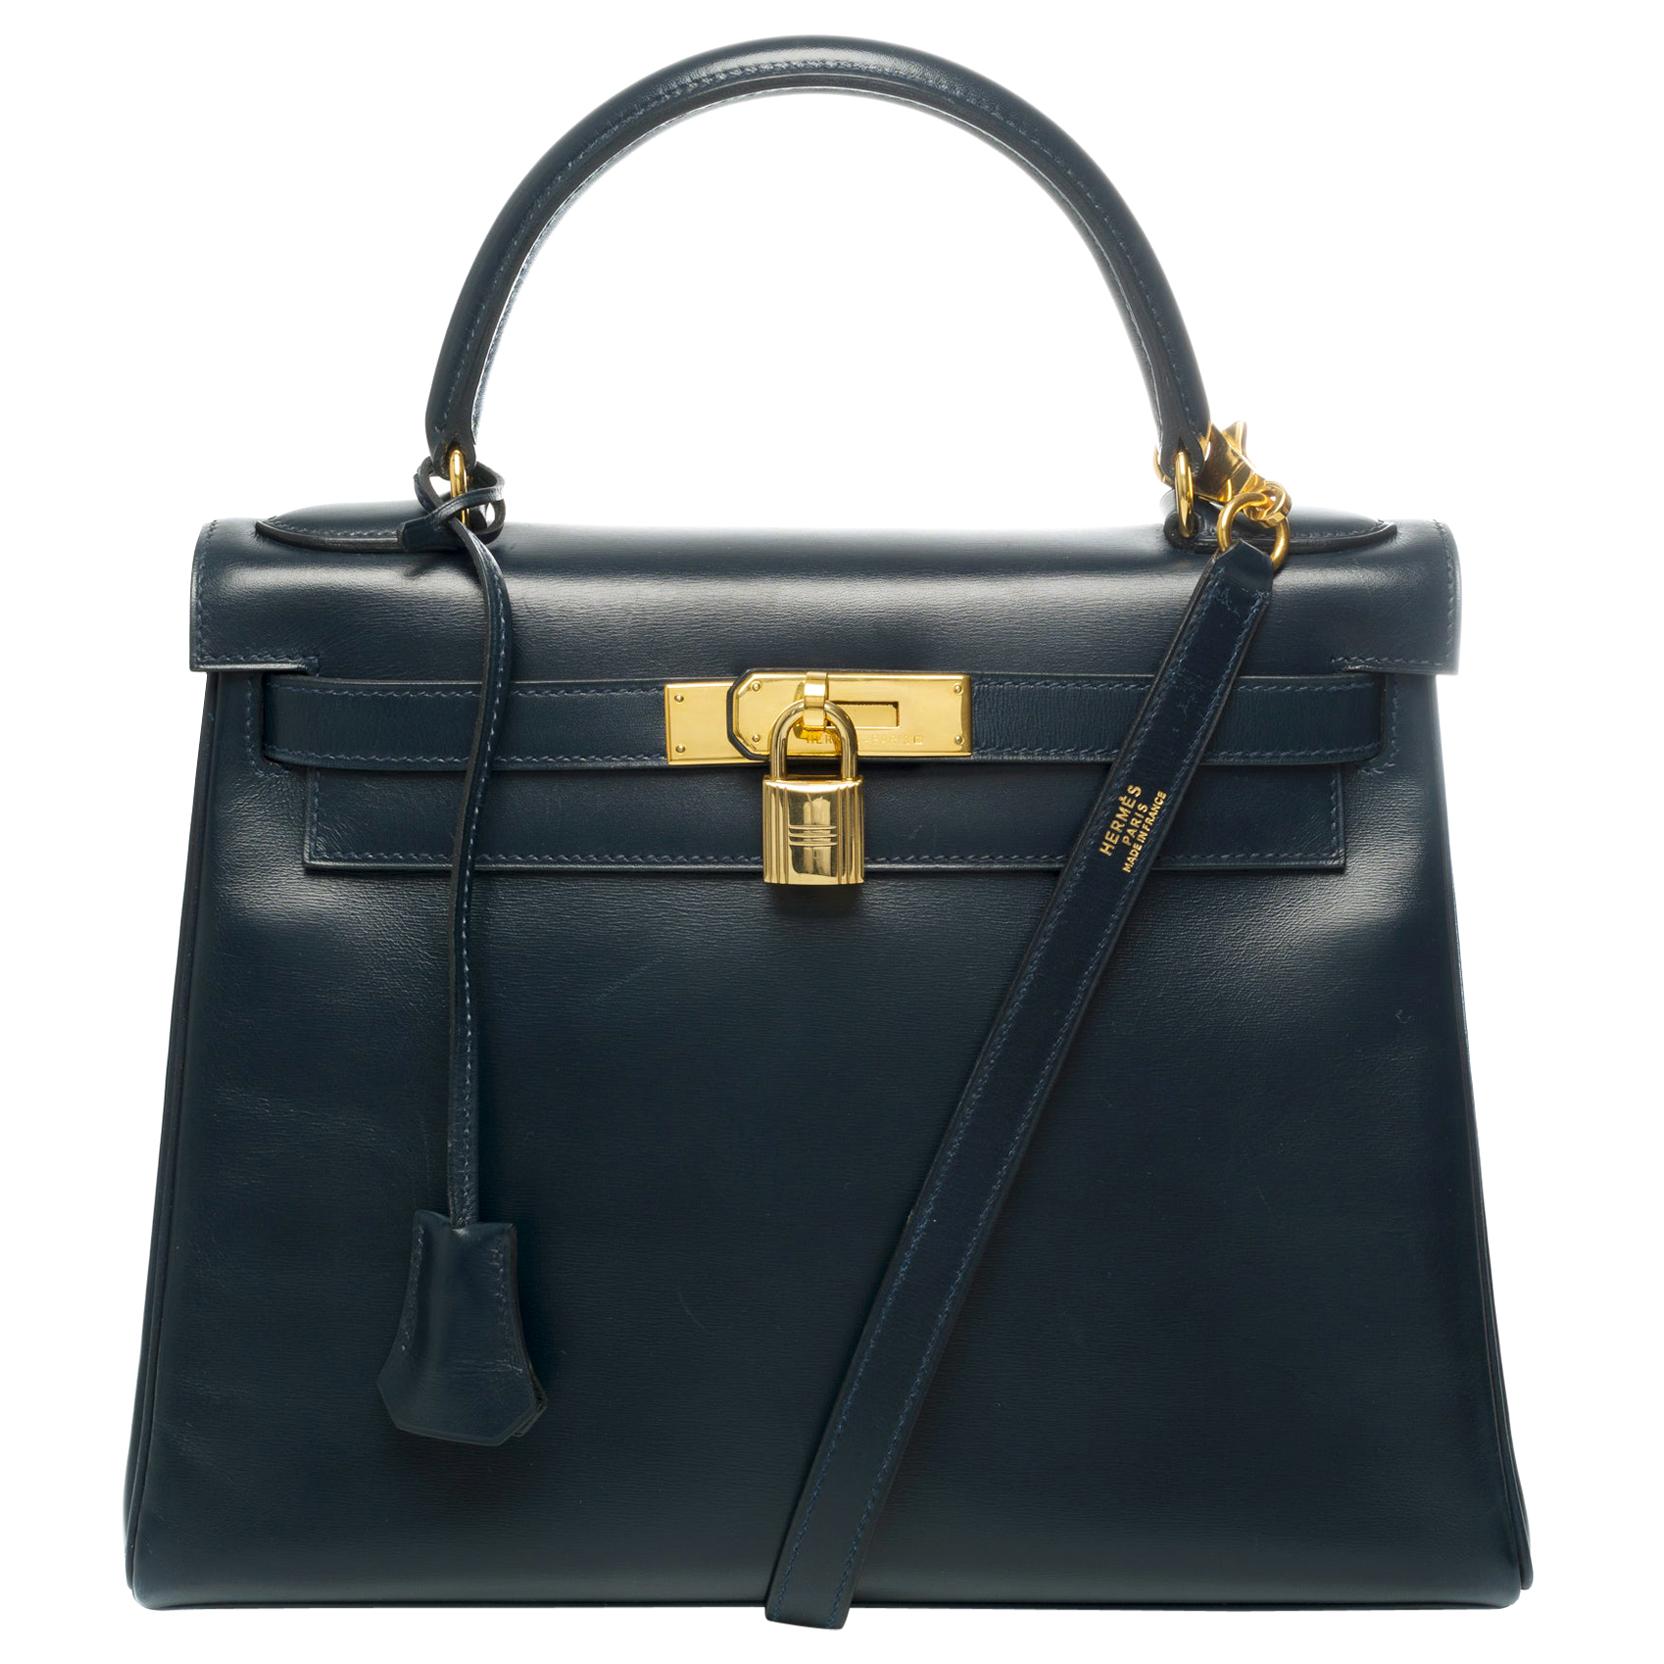 Hermes Kelly Handbag 28 cm strap in Navy blue box calf shoulder bag and GHW